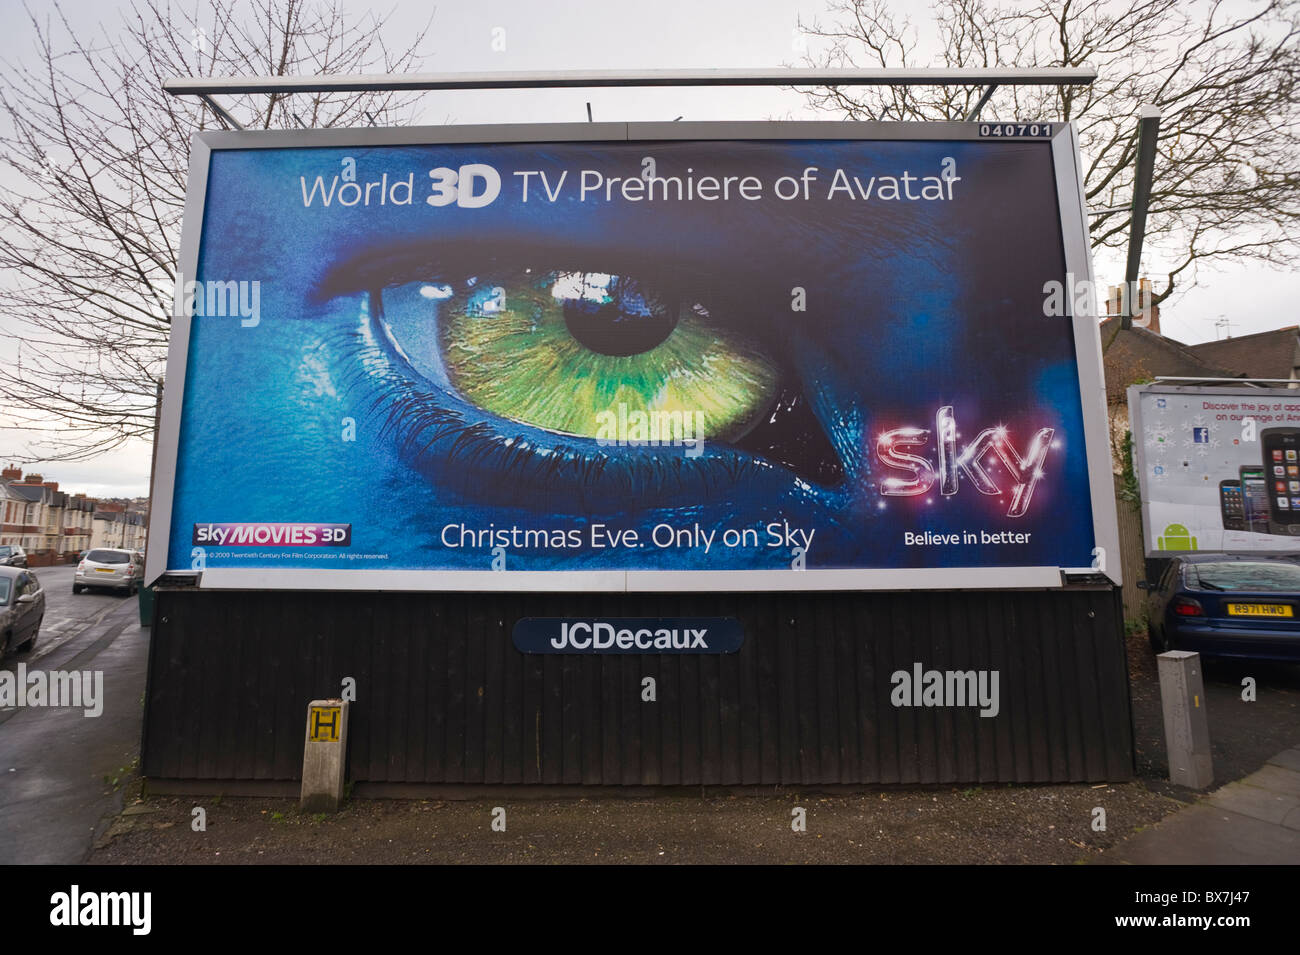 JCDecaux billboard sito che presenta poster pubblicitario per film SKY Mondo  3D TV Premiere di Avatar Foto stock - Alamy